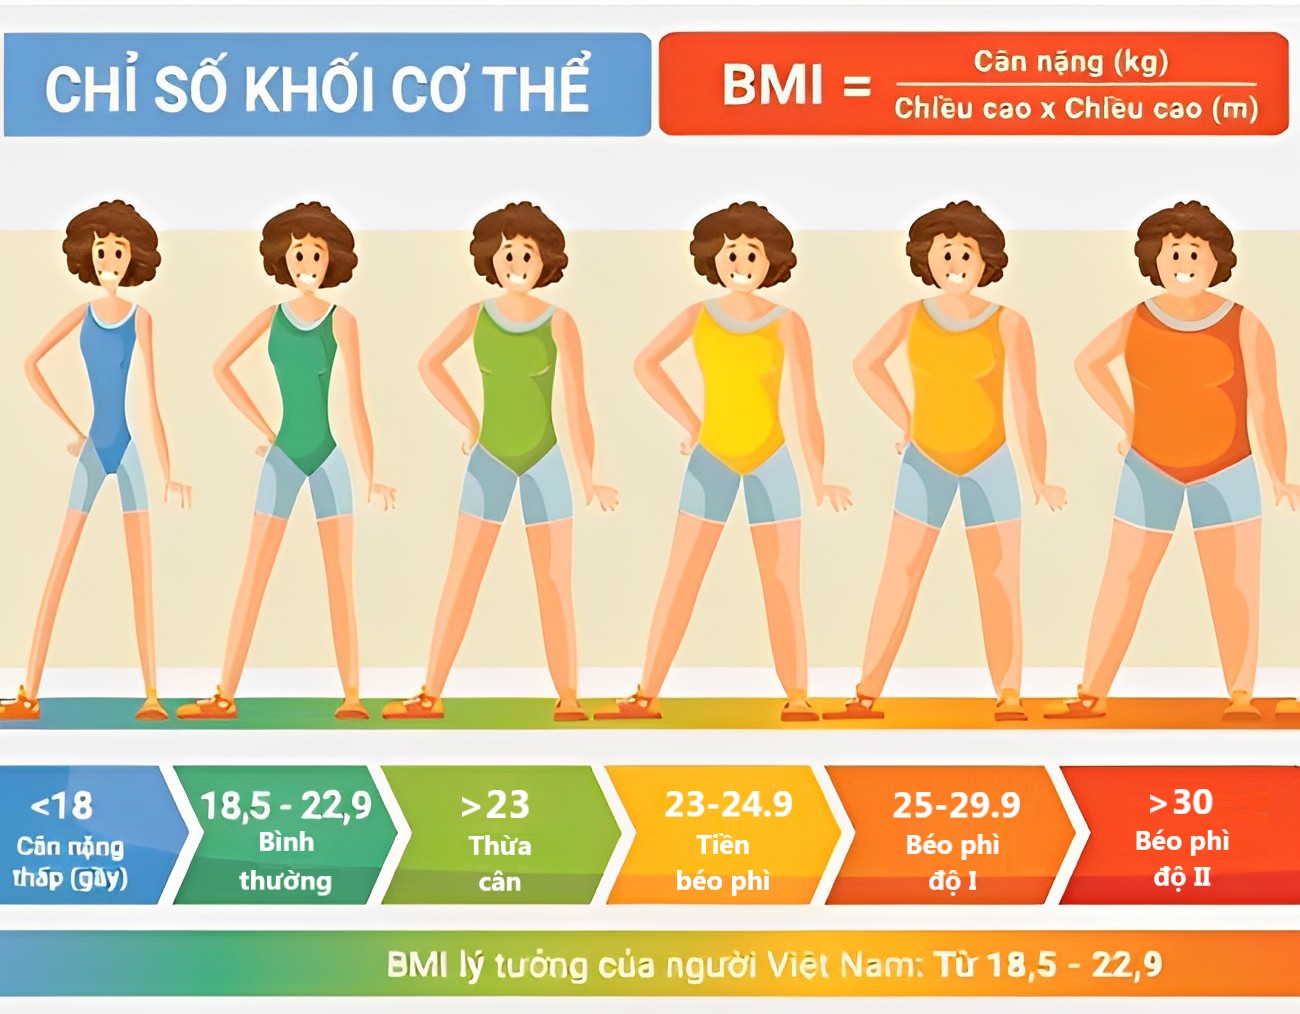 Bảng chỉ số khối cơ thể giúp nhận biết cơ thế gầy, béo hay cân đối